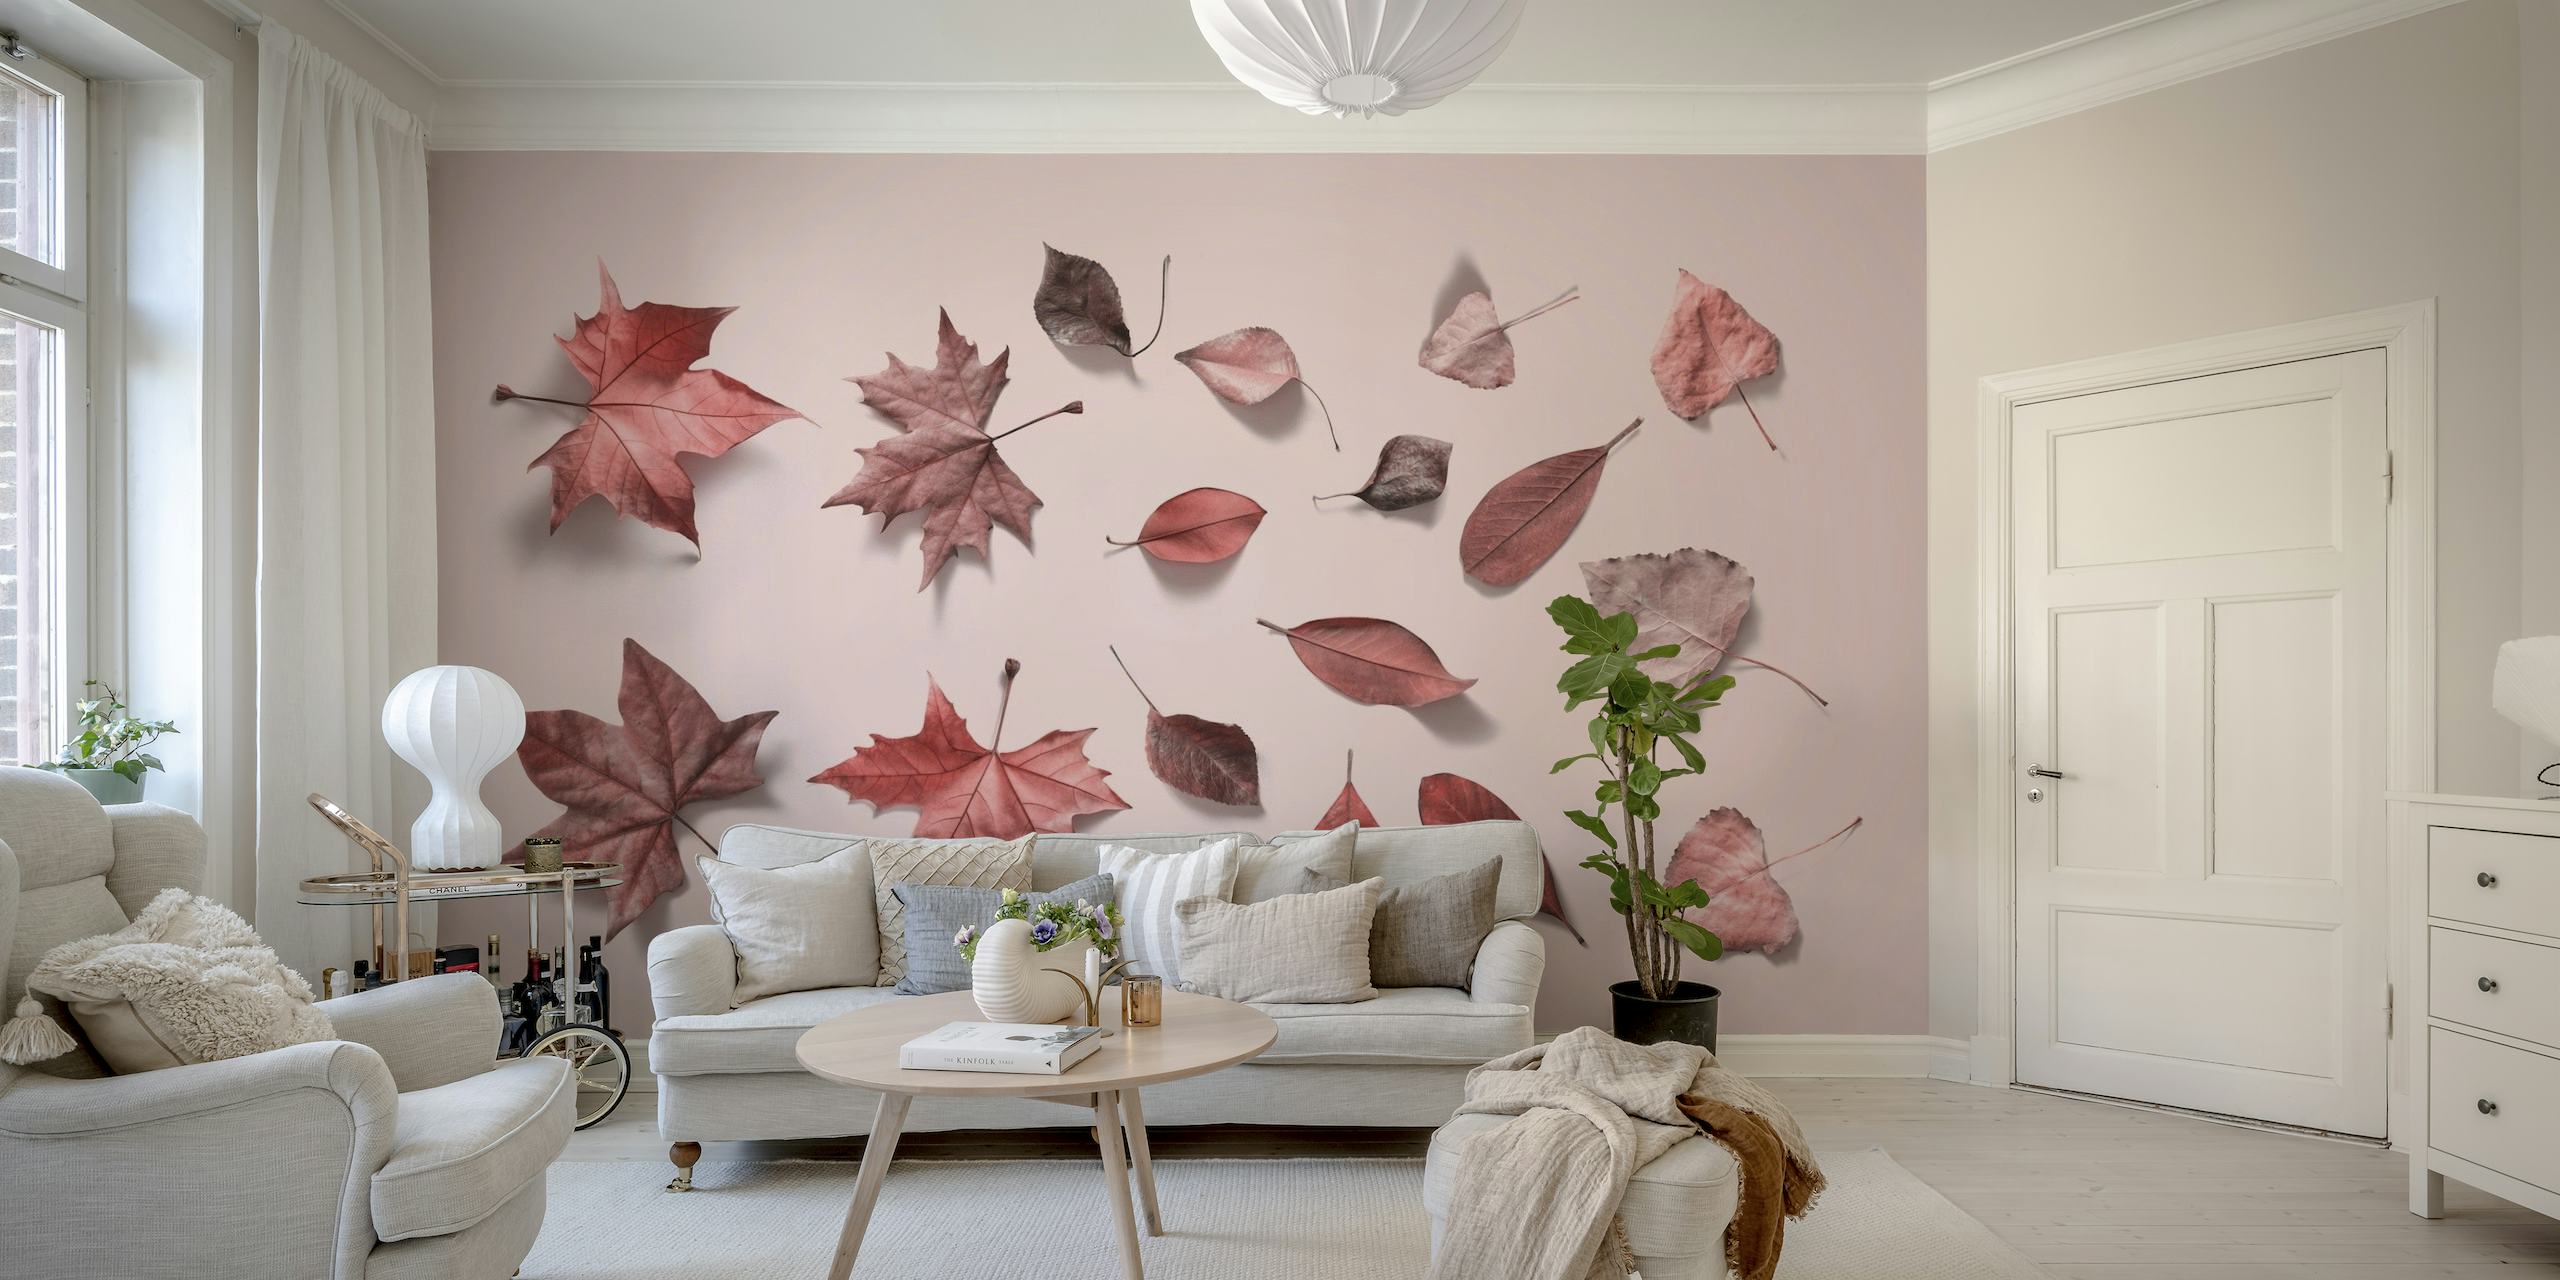 Vaaleanpunainen seinämaalaus, jossa syksyn lehtiä hajallaan eri vaaleanpunaisissa sävyissä.